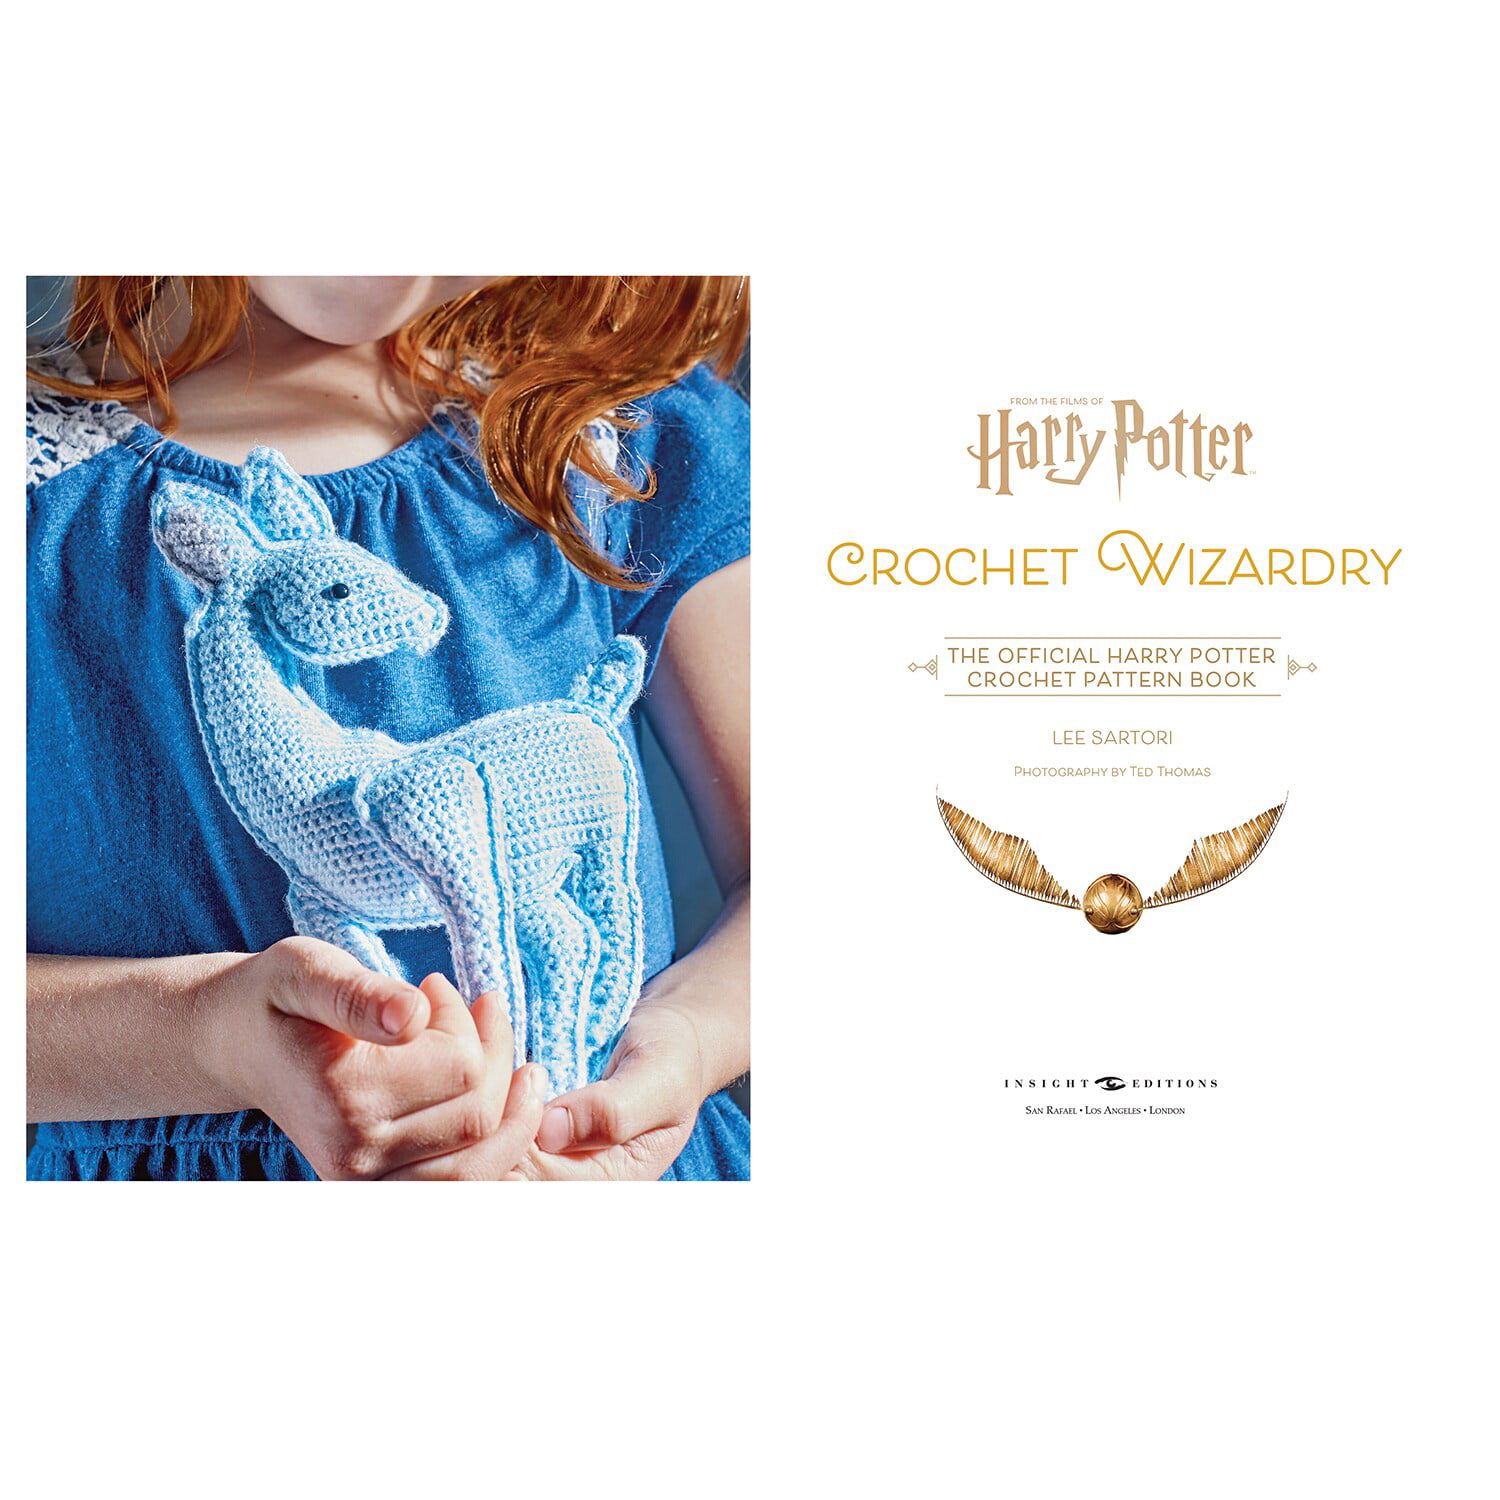 Ravelry: Harry Potter Crochet Wizardry (Pavilion edition) - patterns